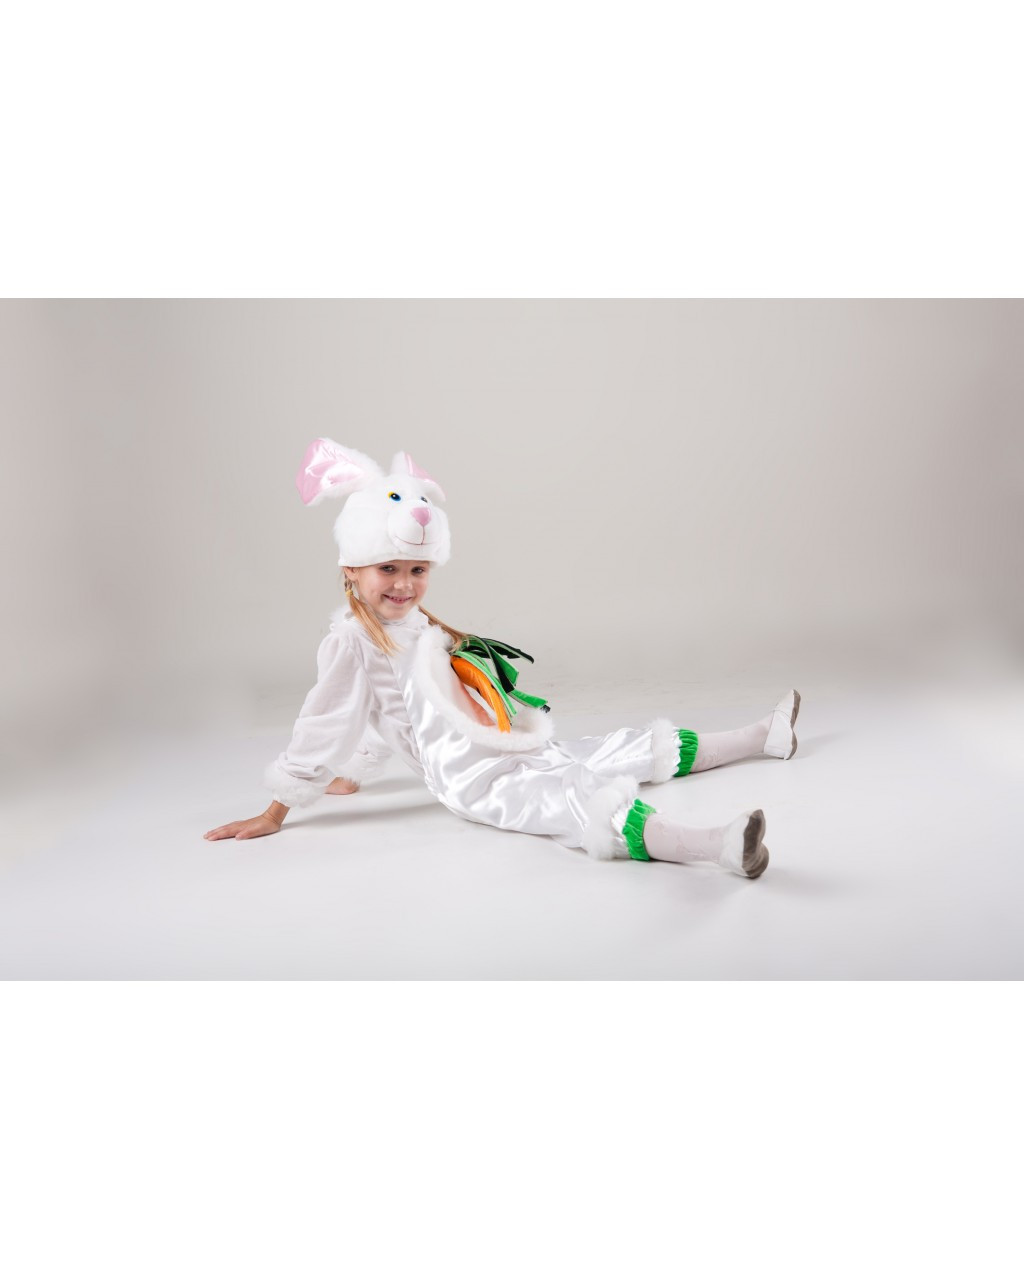 Дитячий карнавальний костюм "Зайка" білий заєць